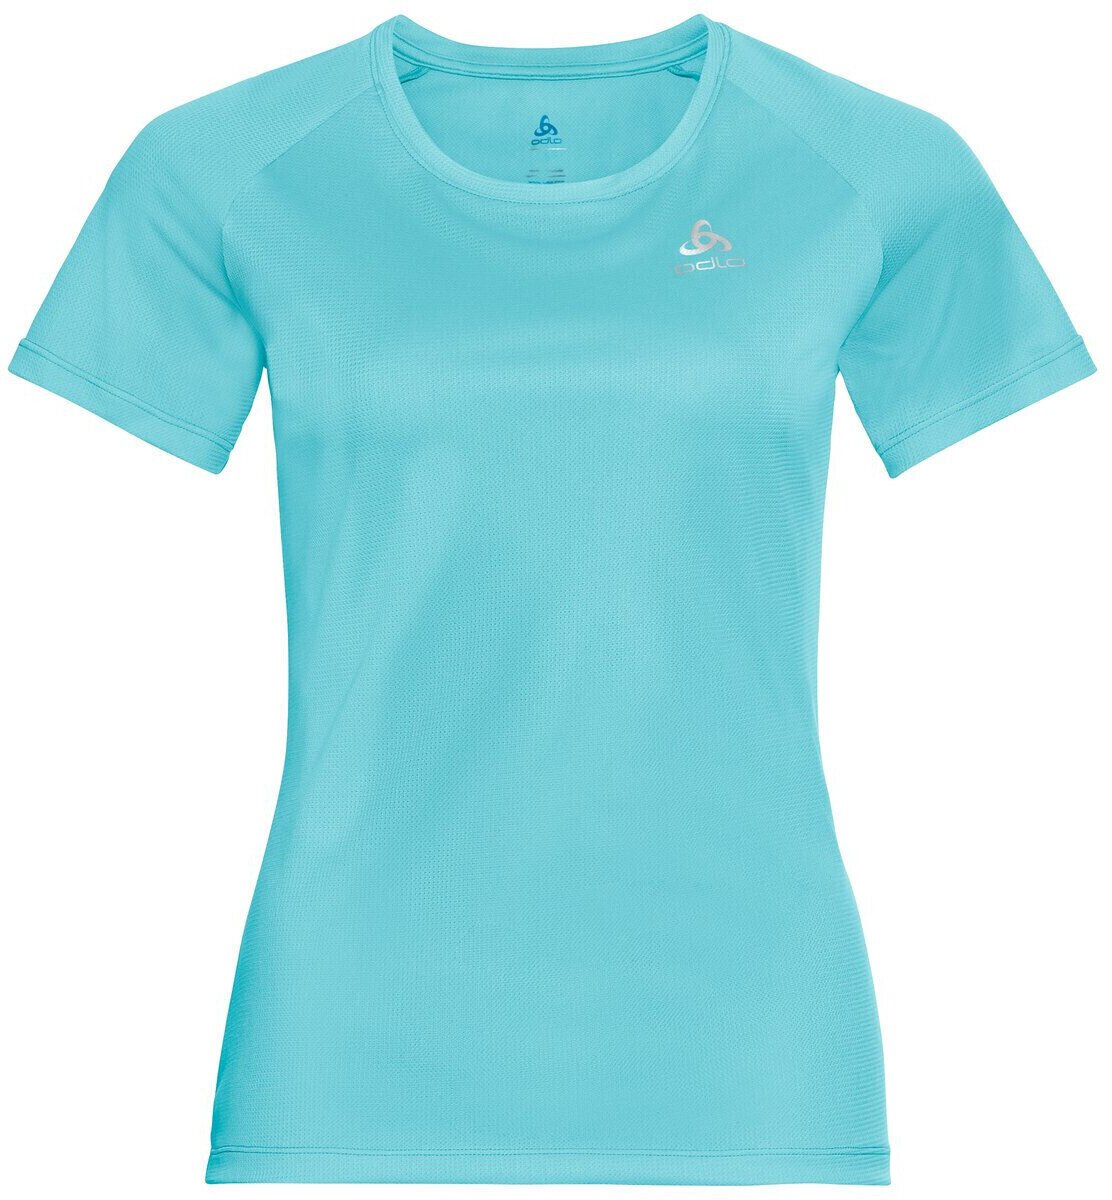 Běžecké tričko s krátkým rukávem
 Odlo Element Light T-Shirt Blue Radiance XS Běžecké tričko s krátkým rukávem